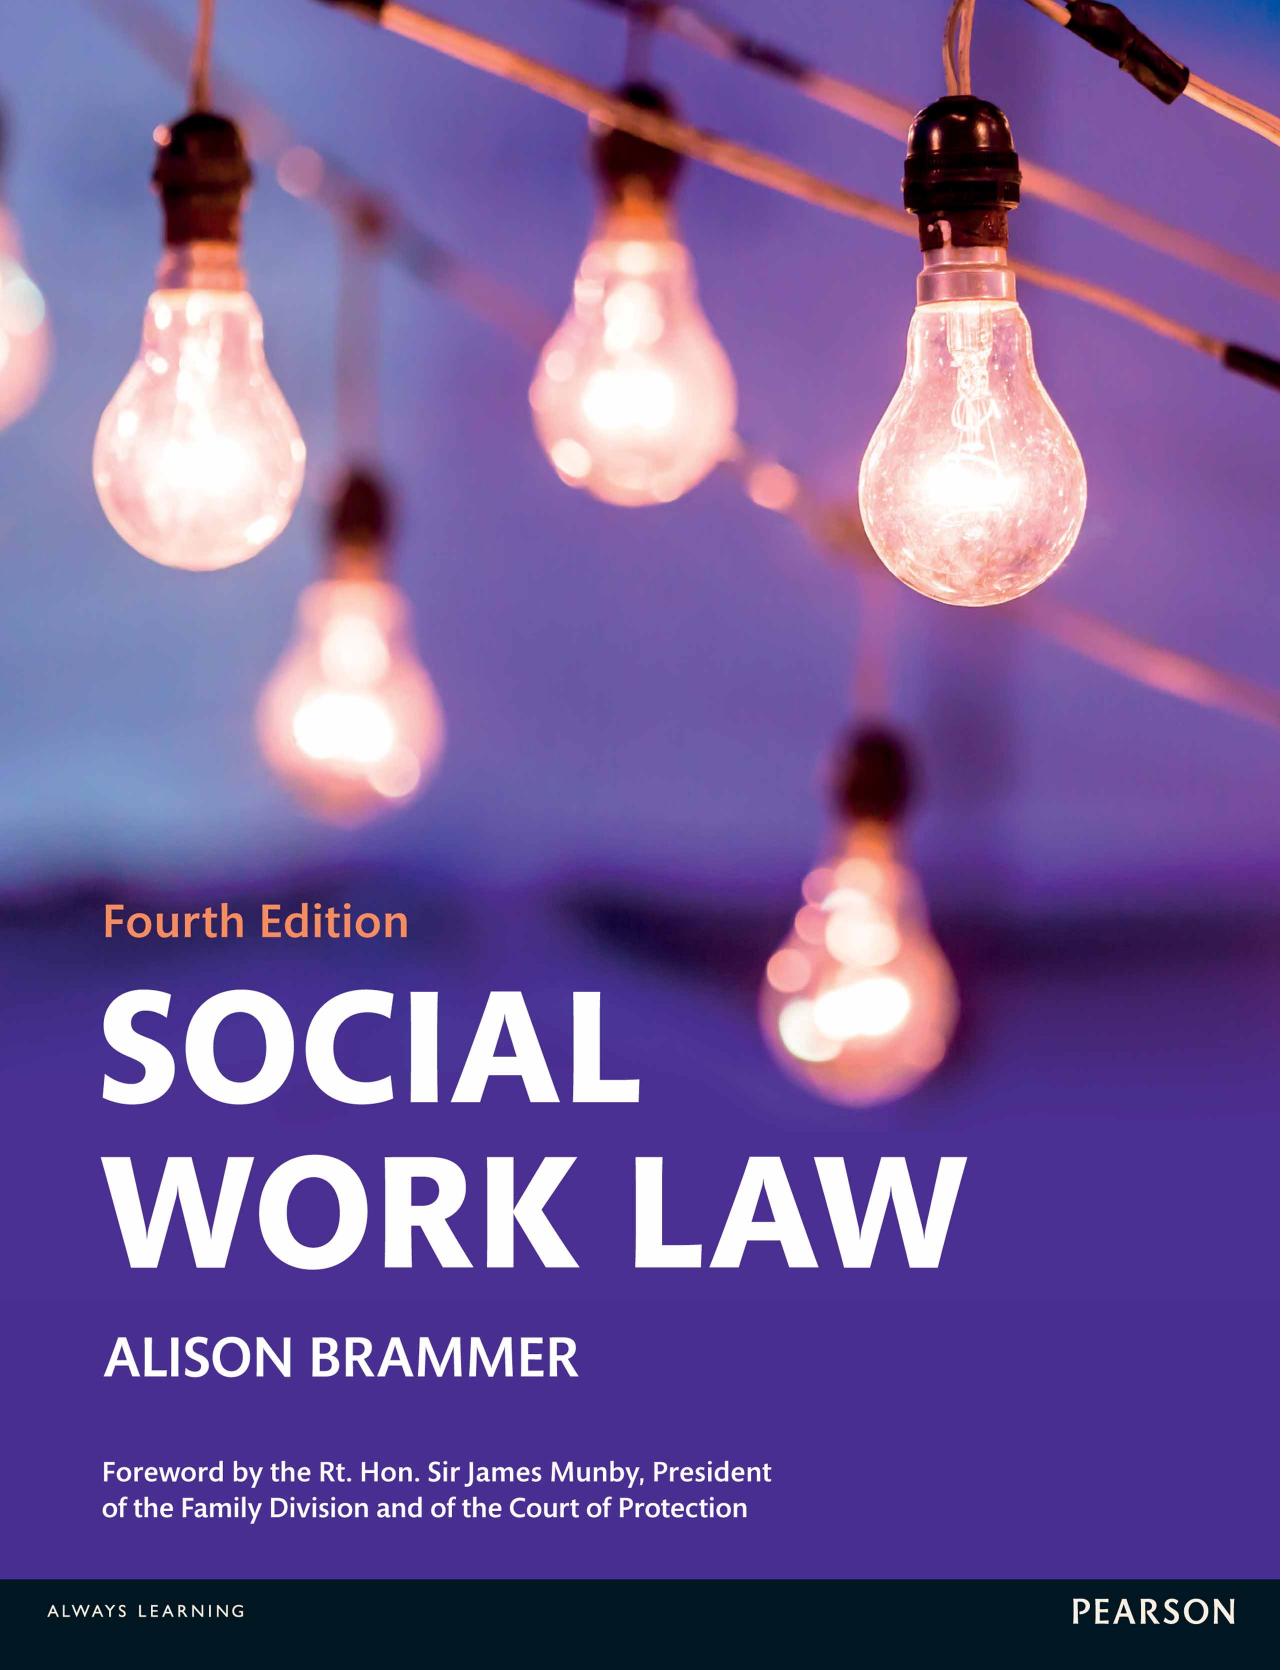 SOCIAL WORK LAW, Fourth Edition